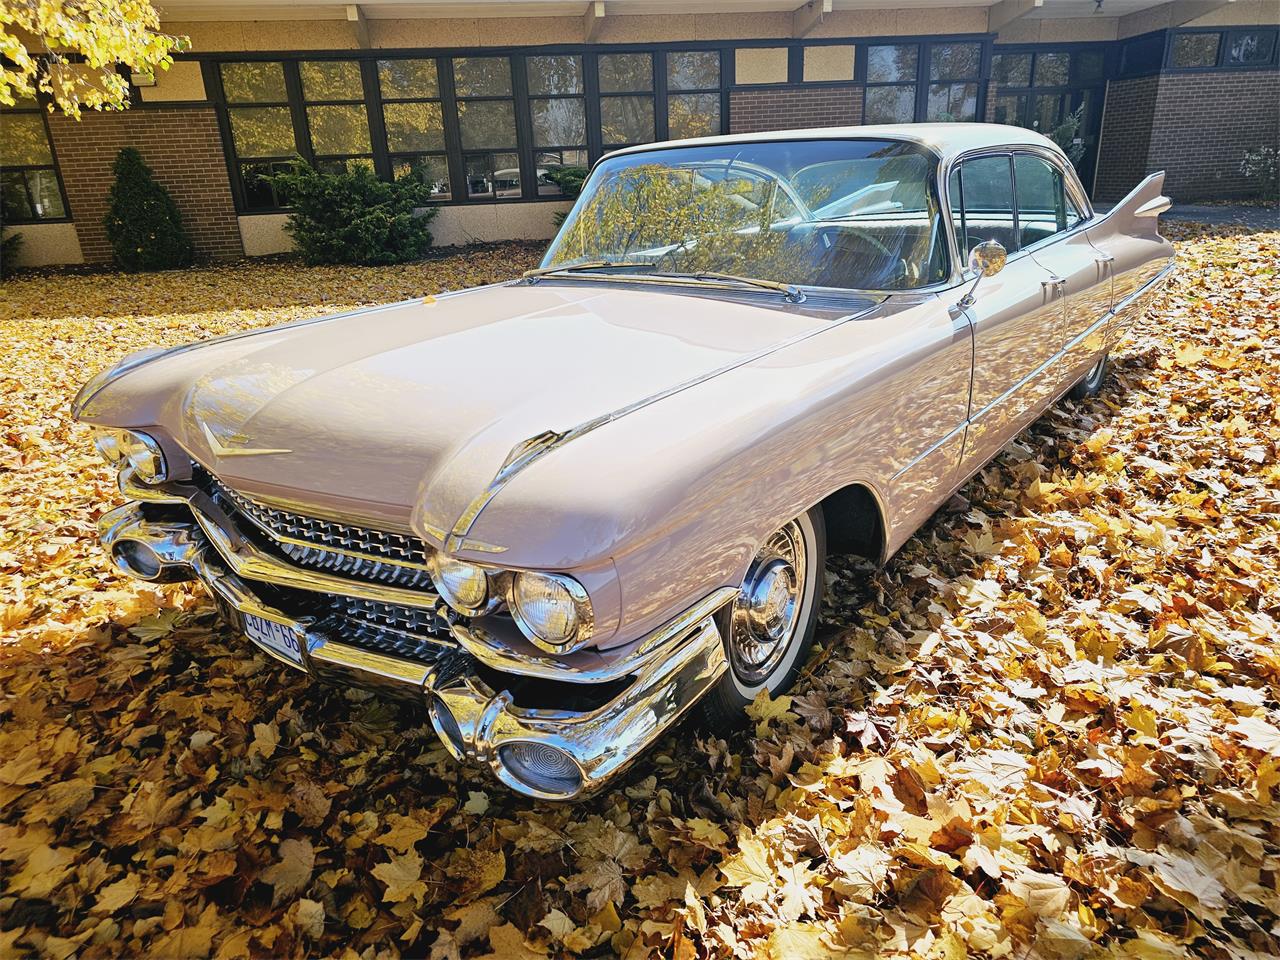 1959 Cadillac Sedan DeVille in Harley, Ontario